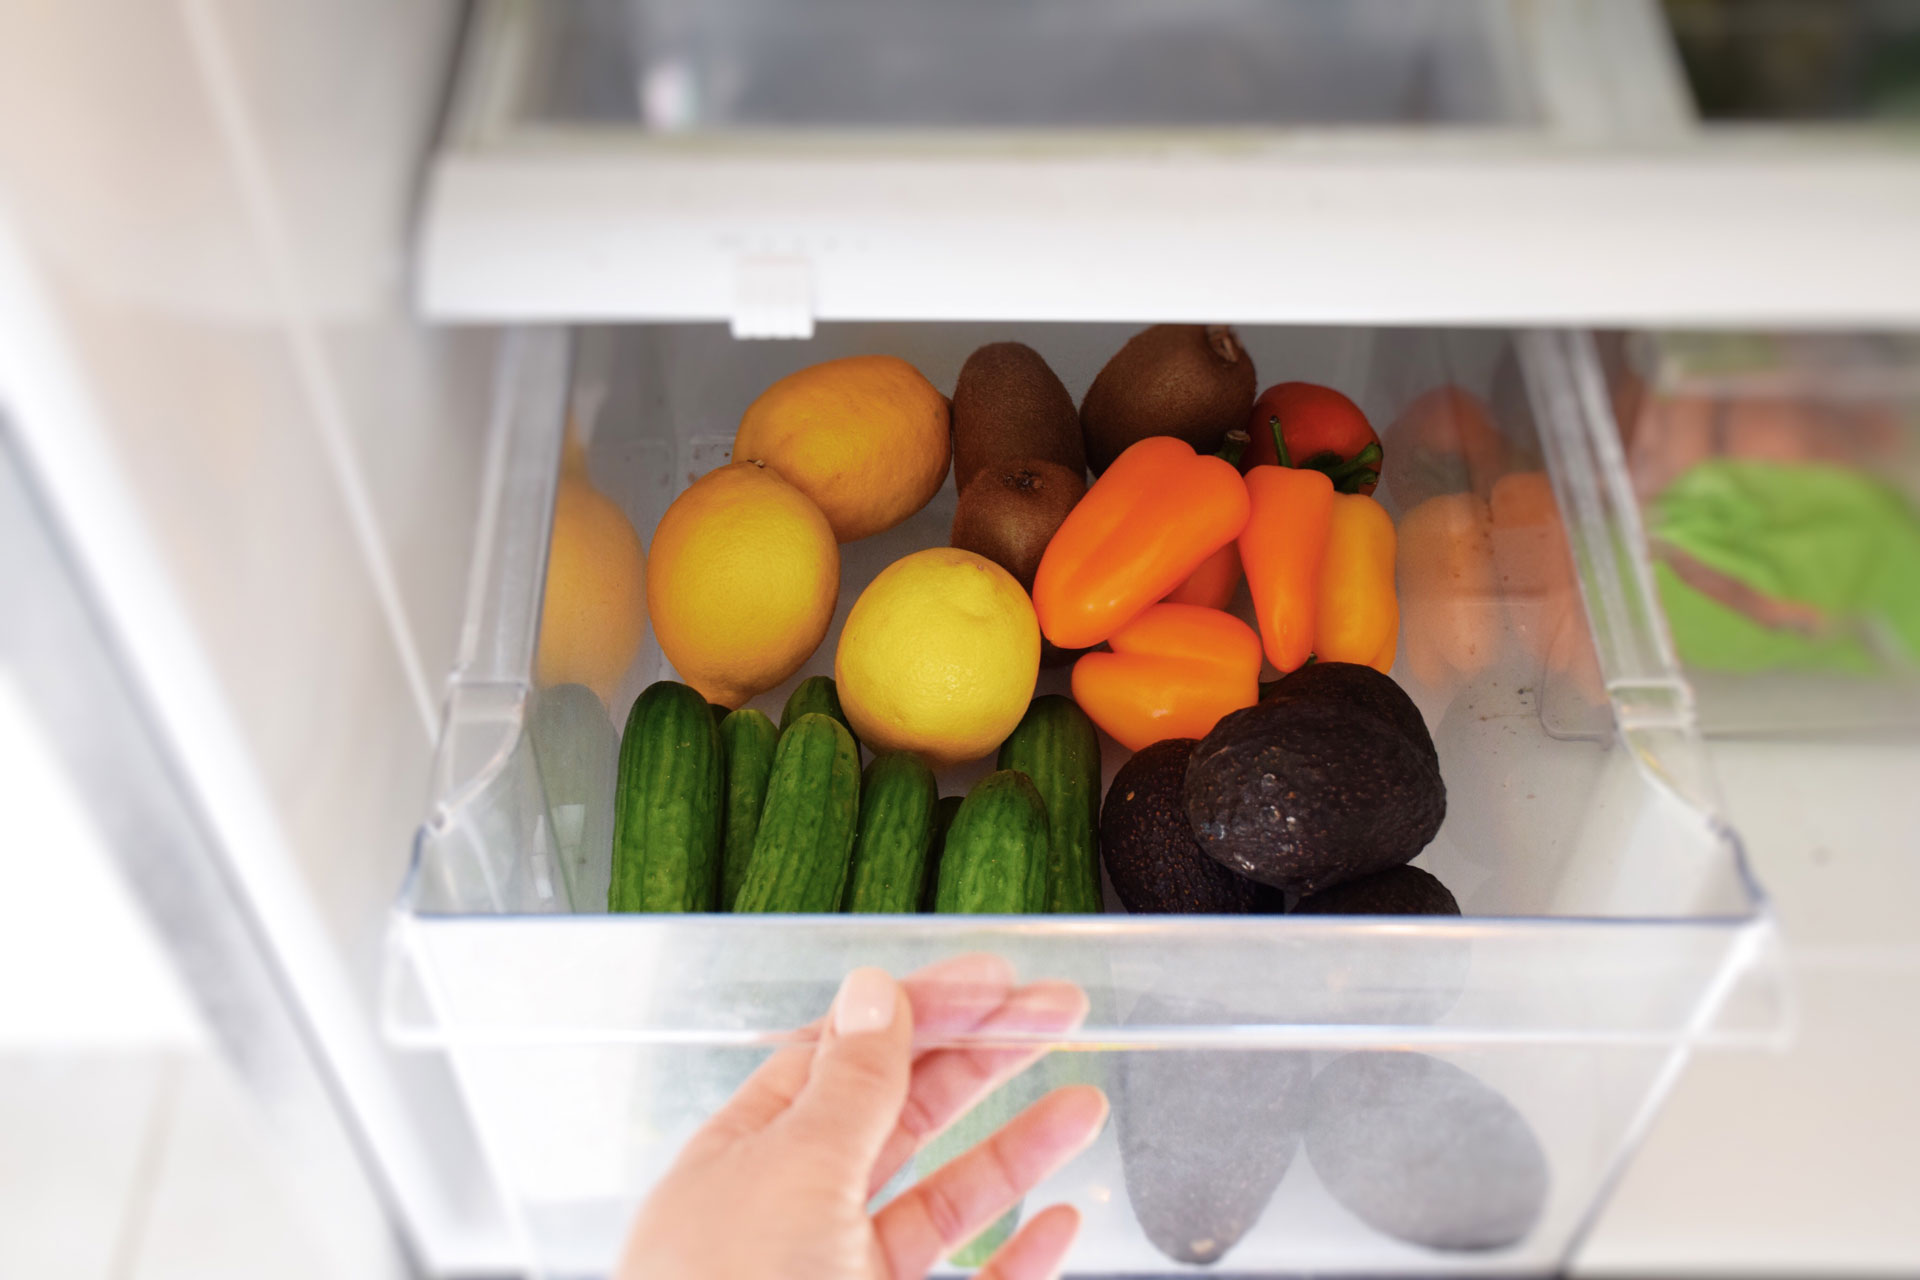 person opening fridge crisper drawer